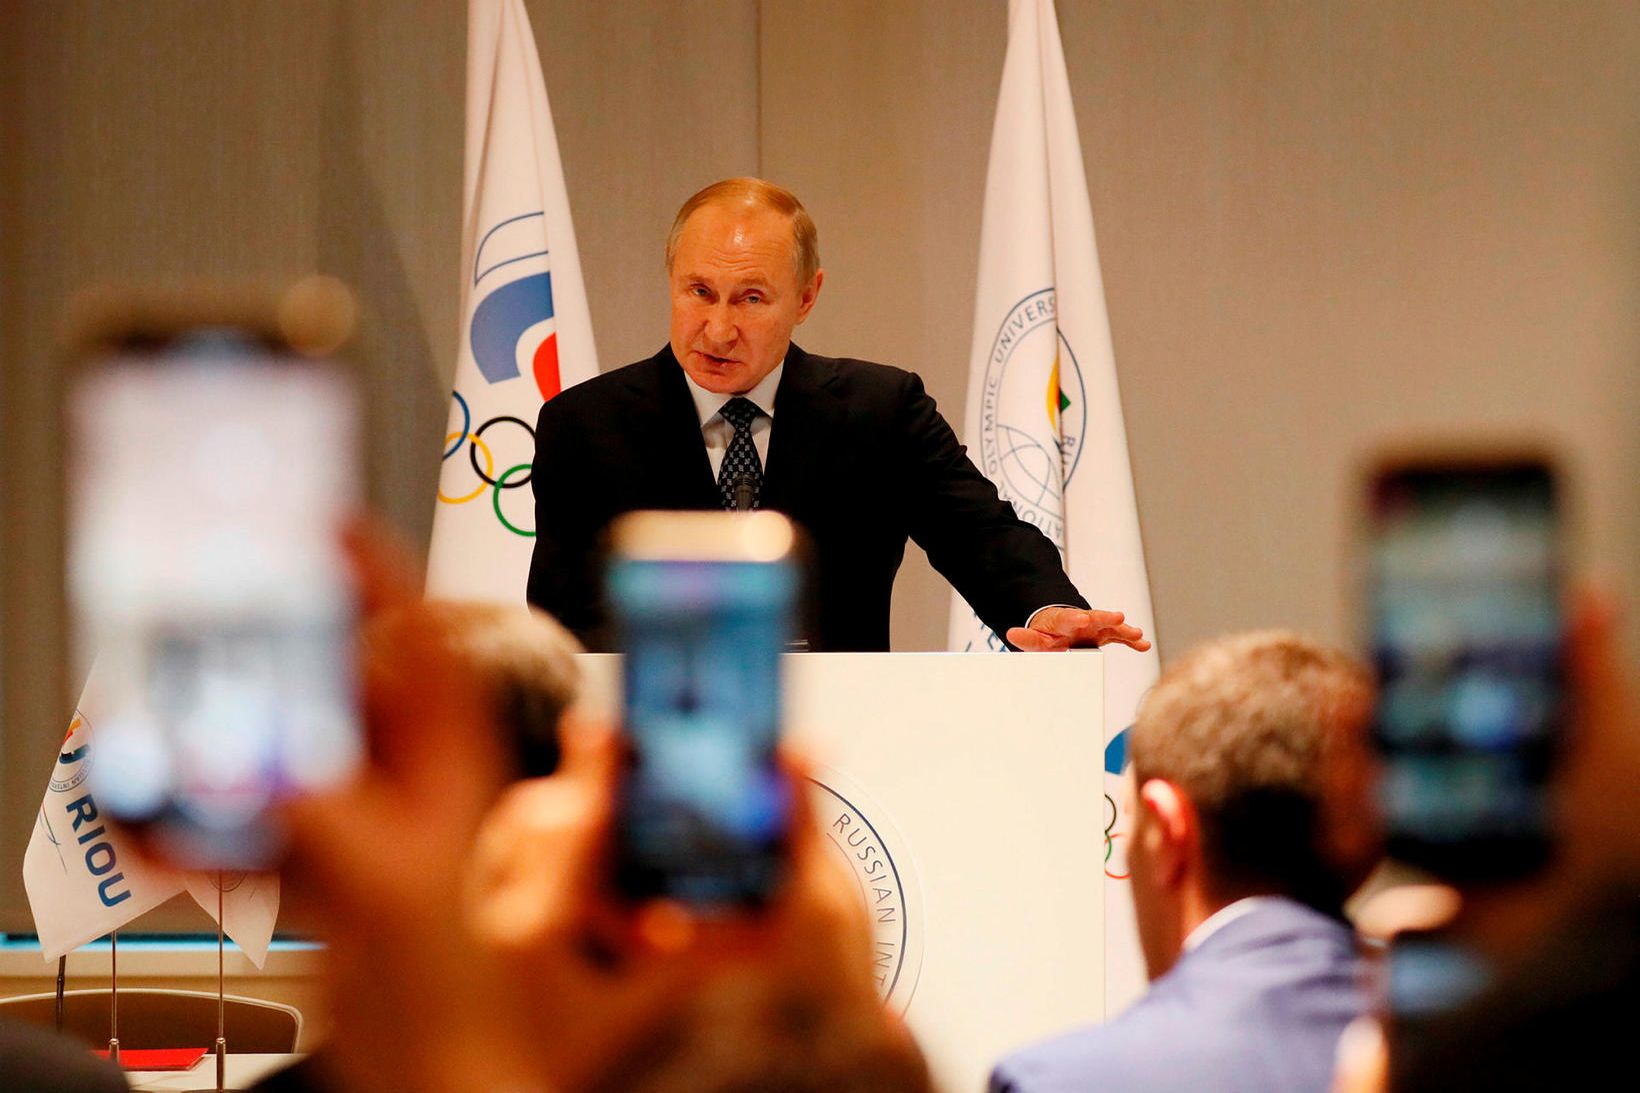 Vladimir Putin heldur ræðu á Ólympíusamkomu í Sochi í Rússlandi …